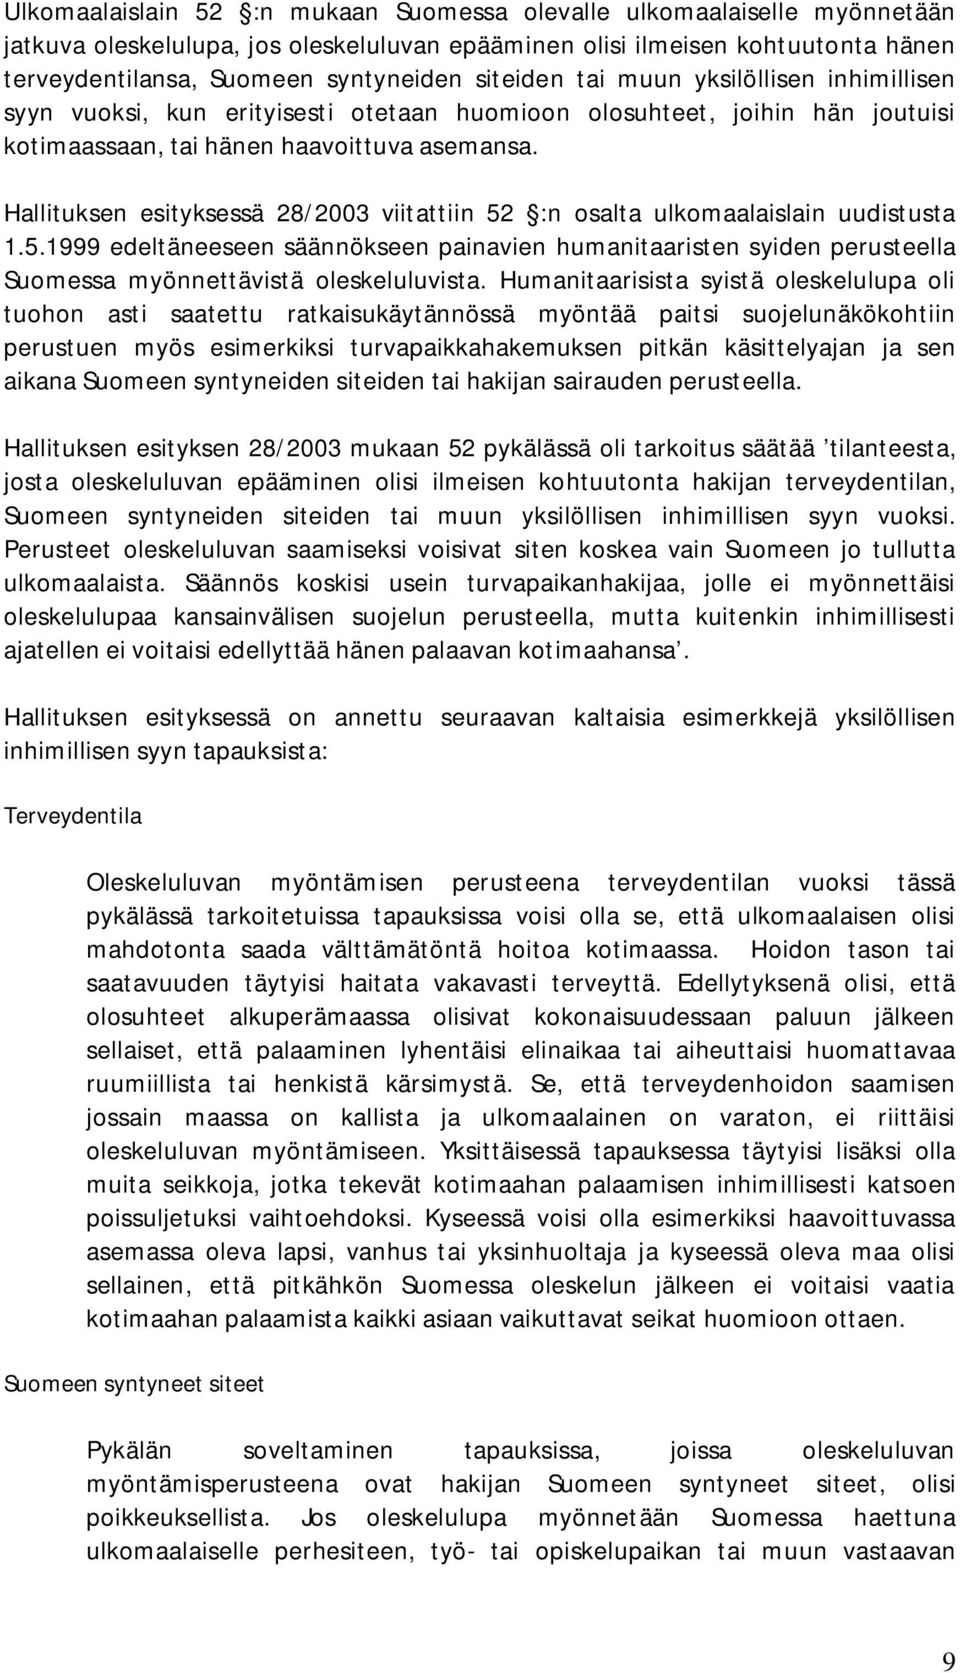 Hallituksen esityksessä 28/2003 viitattiin 52 :n osalta ulkomaalaislain uudistusta 1.5.1999 edeltäneeseen säännökseen painavien humanitaaristen syiden perusteella Suomessa myönnettävistä oleskeluluvista.